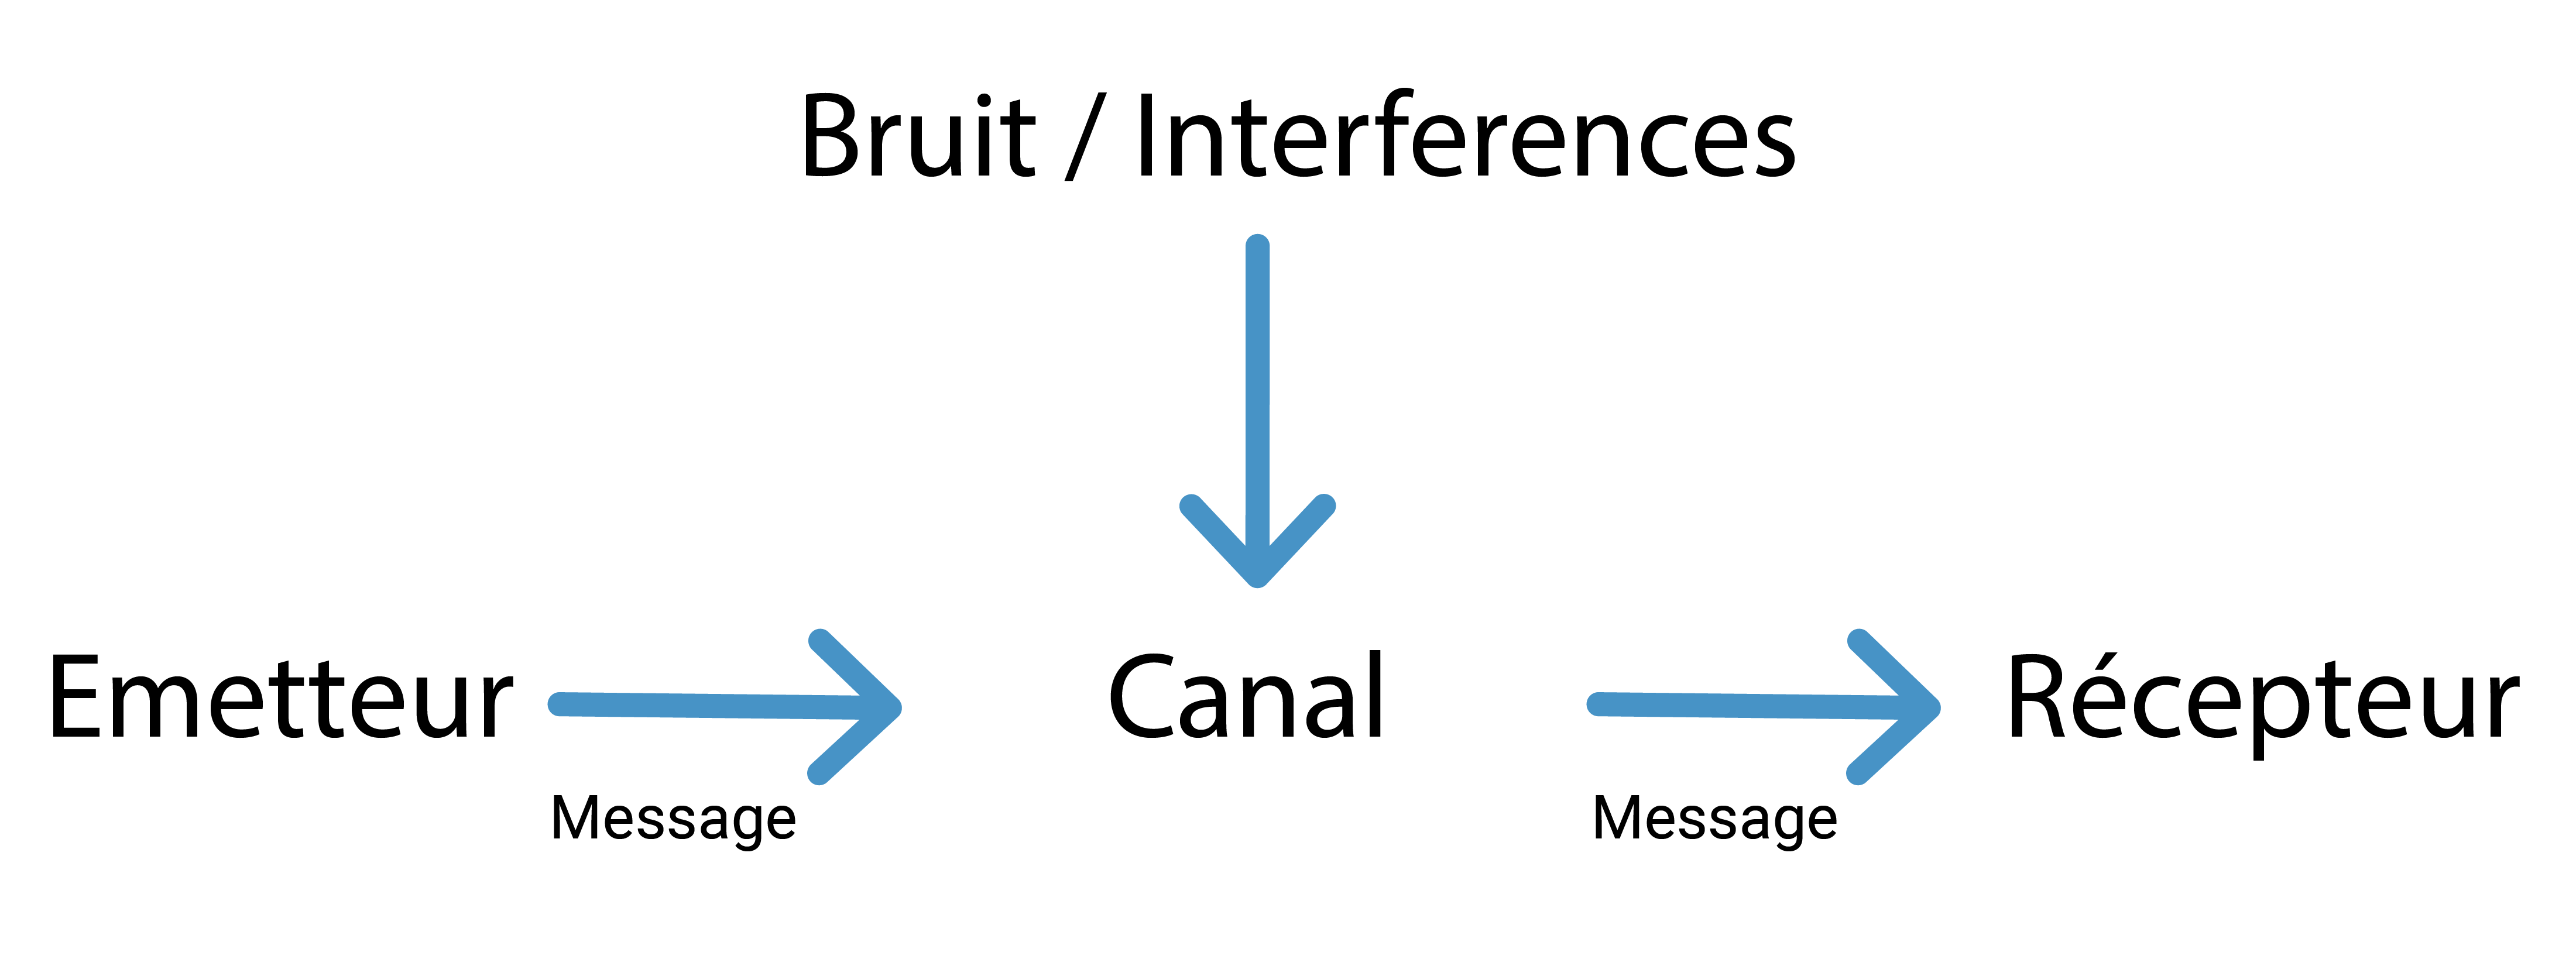 Un diagramme de communication montrant comment un message est envoyé. Une flèche va de l'émetteur au canal jusqu'au récepteur. Une autre série de flèches va du bruit/interferences au canal jusqu'au récepteur.